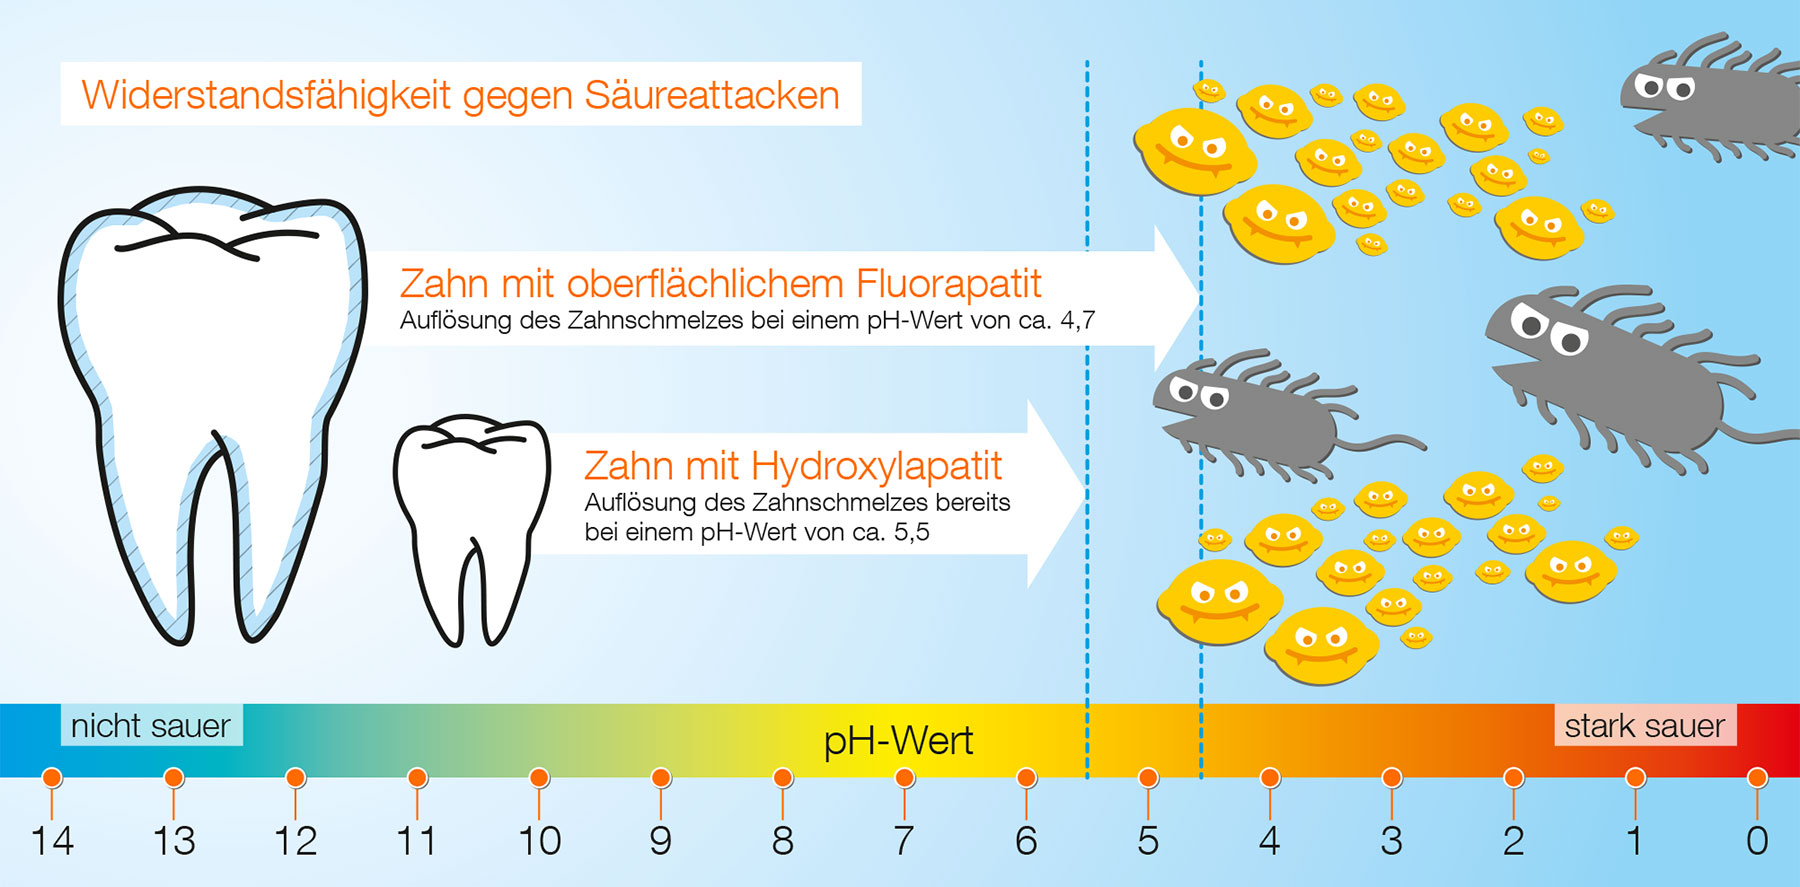 Die Fluoridierung hilft, die Widerstandsfähigkeit der Zähne gegenüber Säureangriffen zu erhöhen.